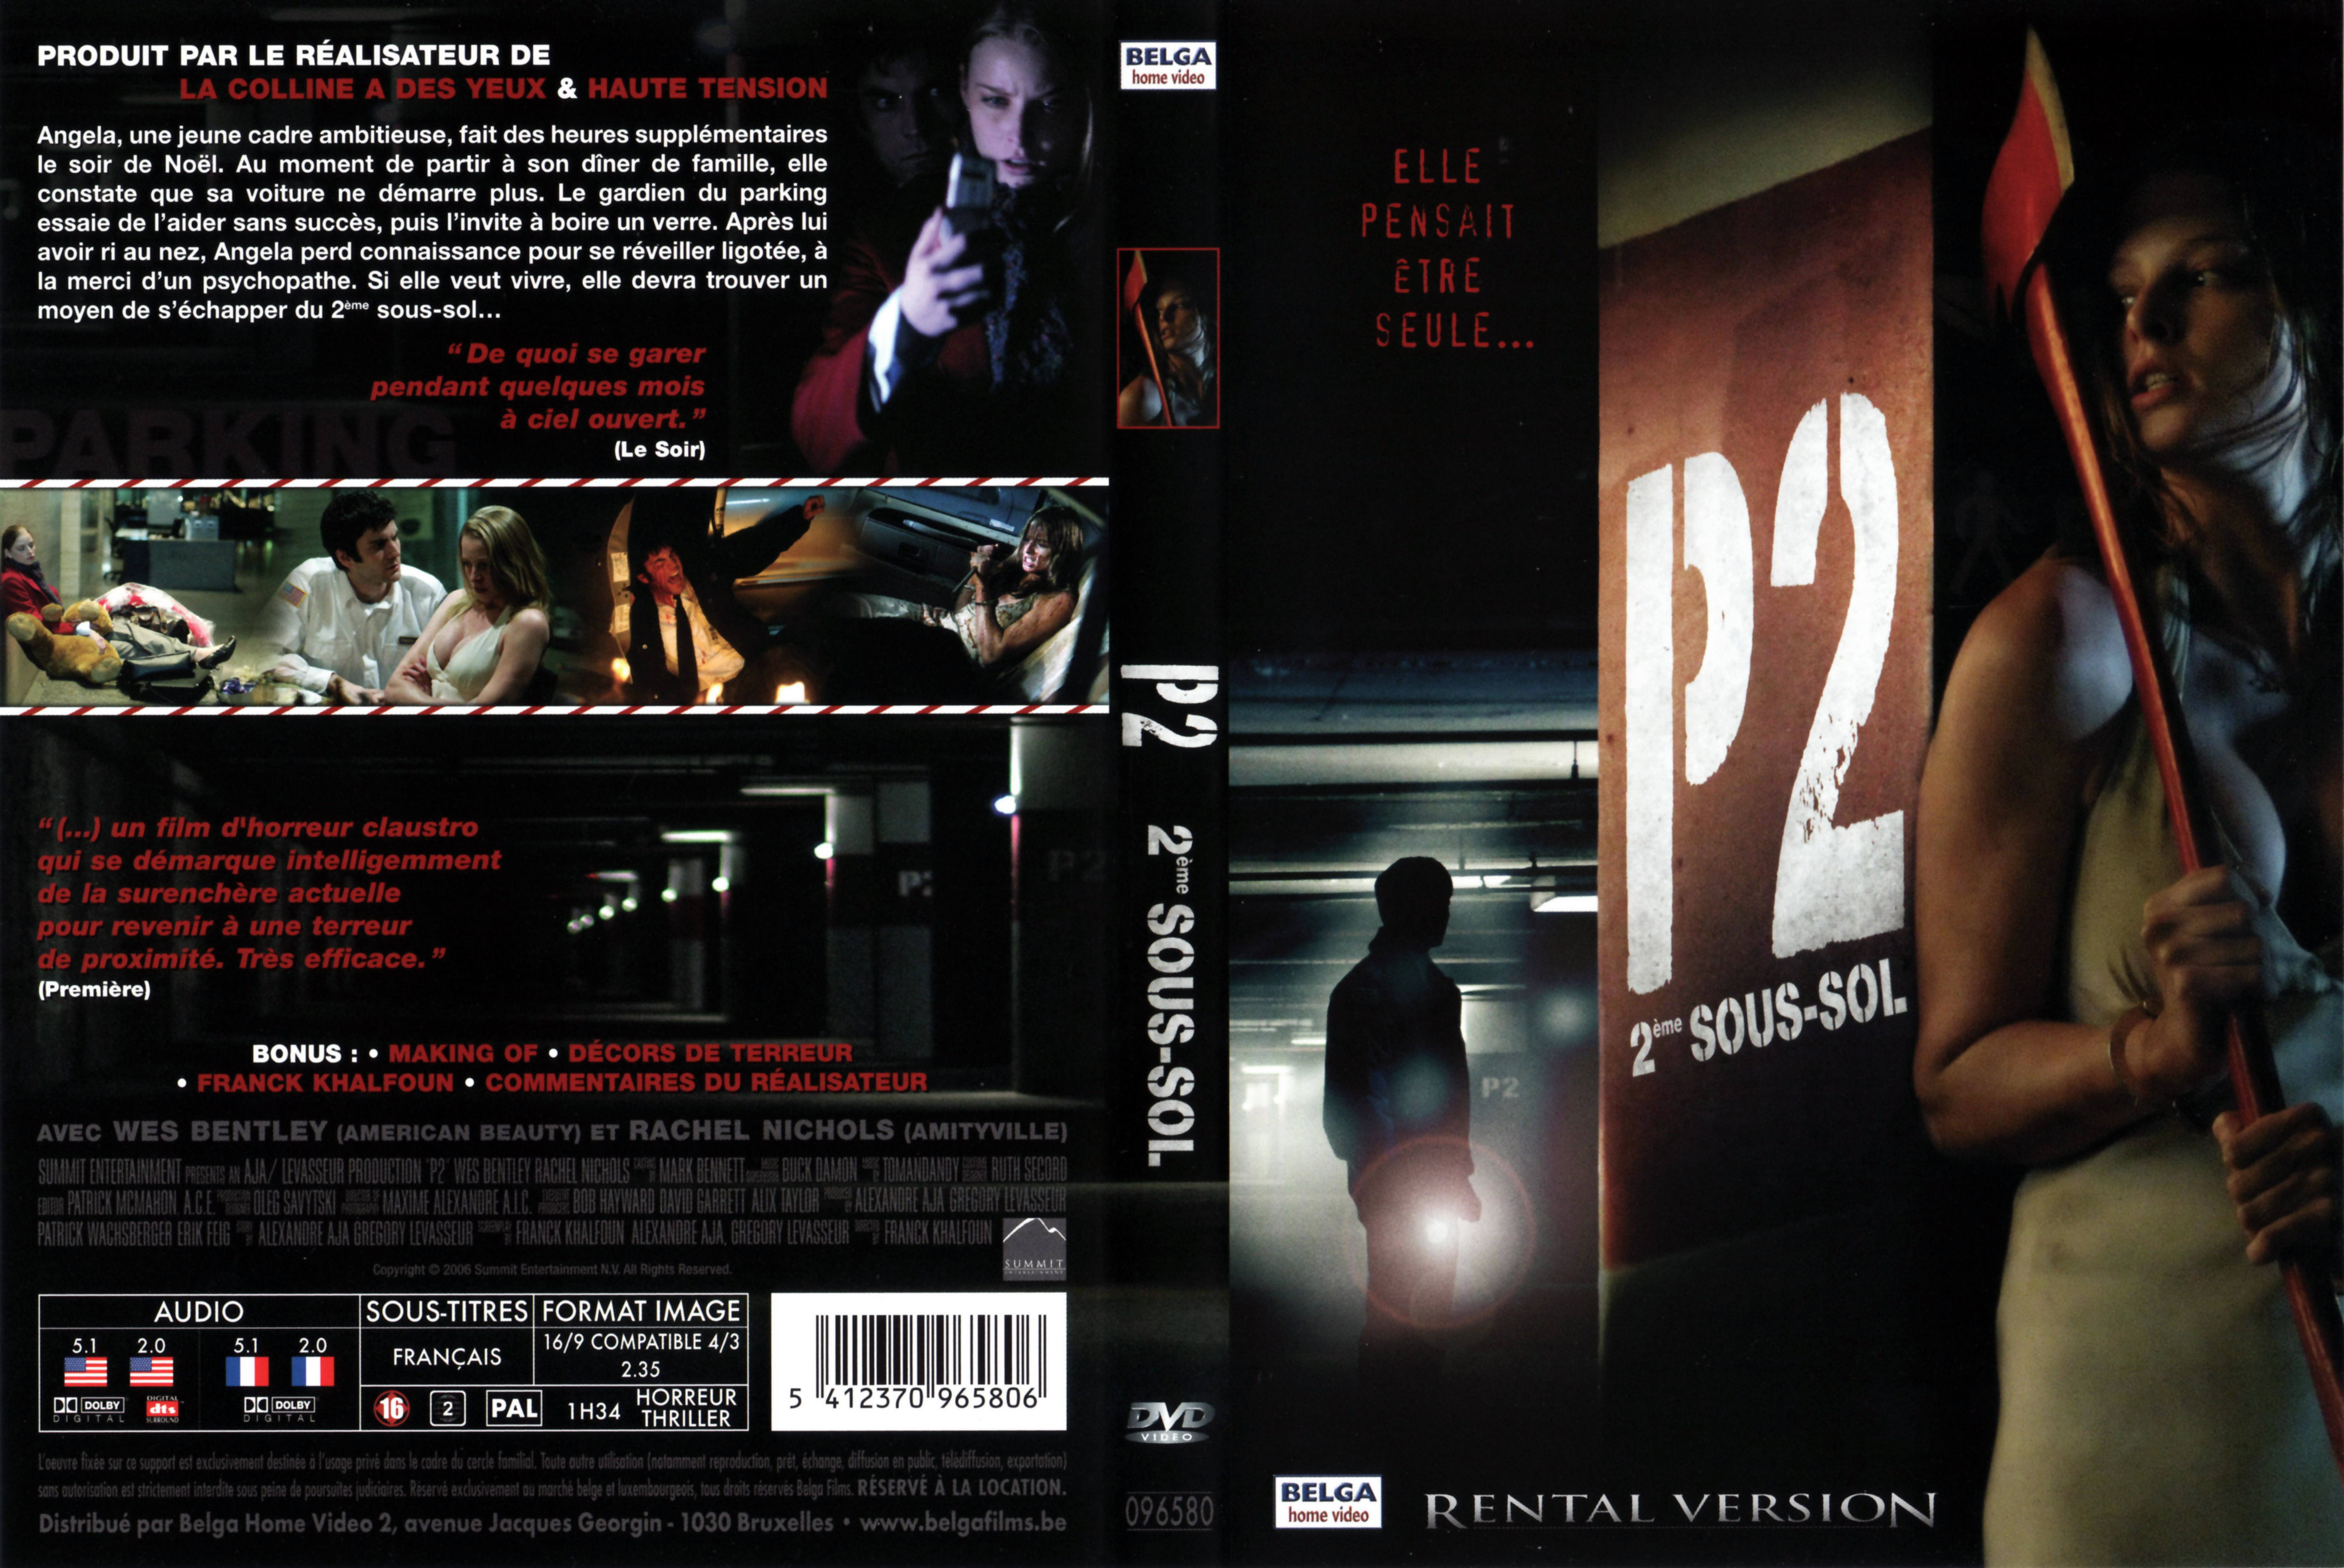 Jaquette DVD P2 2eme sous-sol